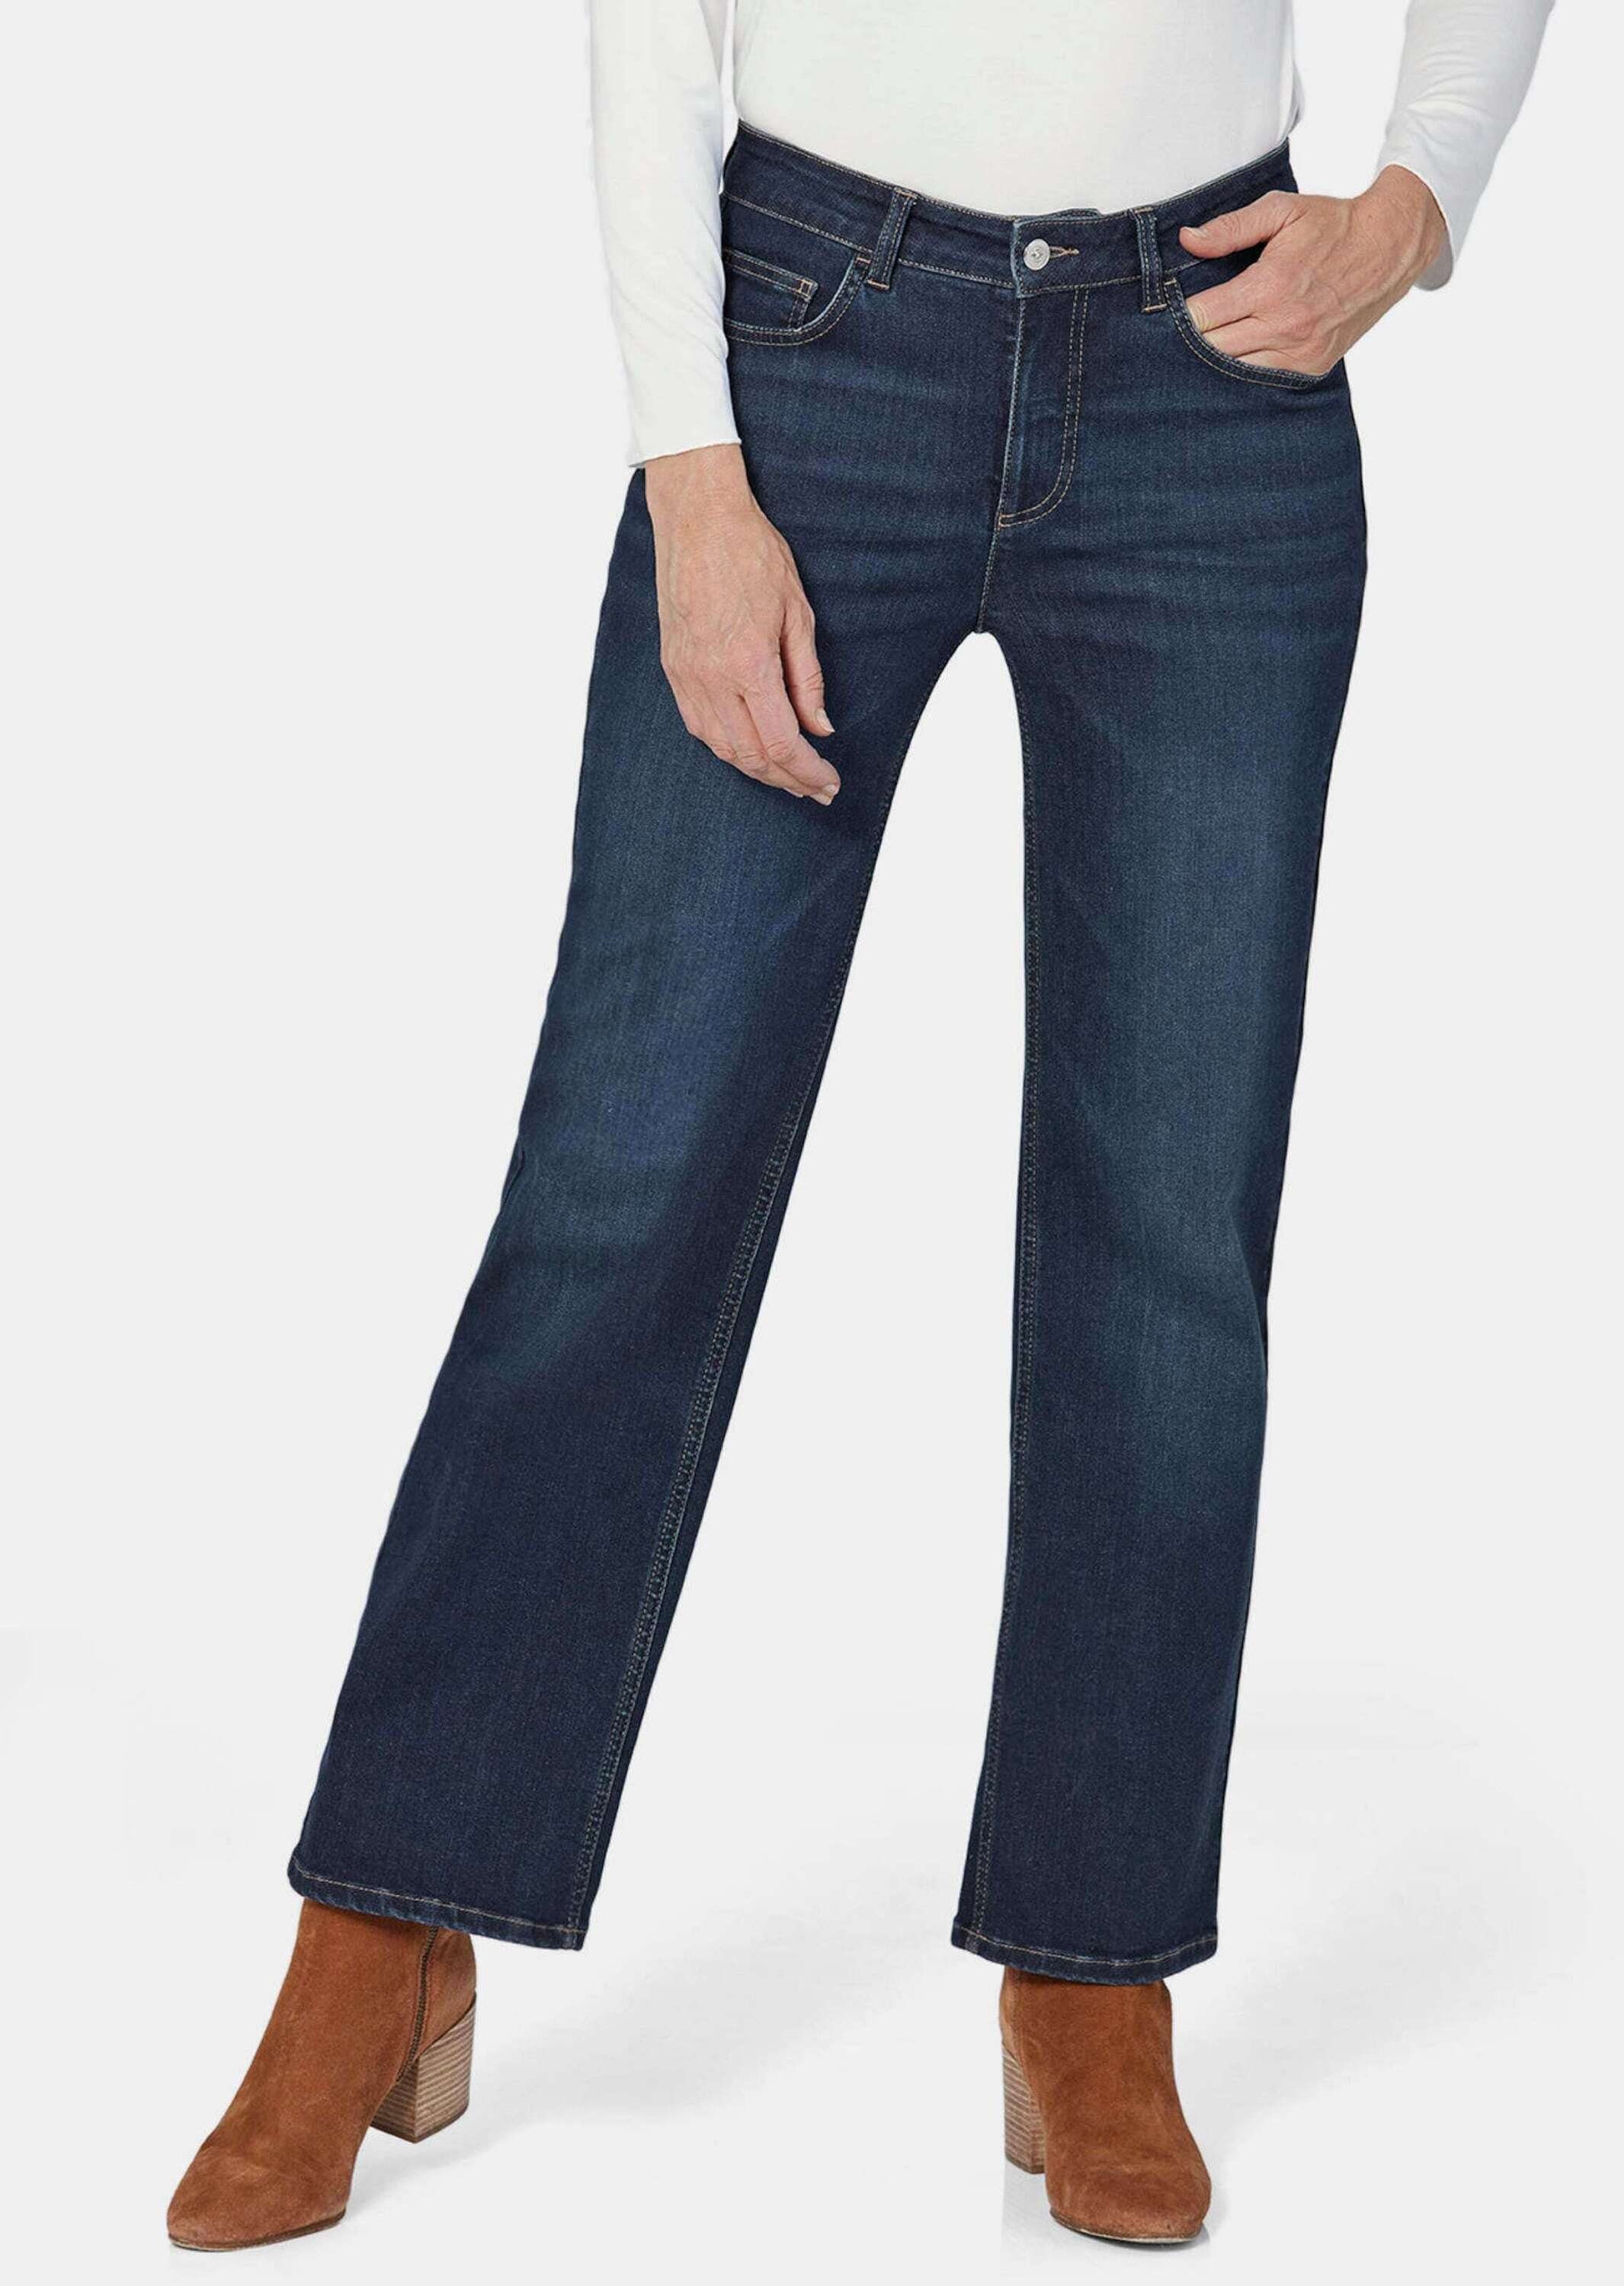 GOLDNER Bequeme Jeans Kurzgröße: Denim Jeans mit weitem Bein